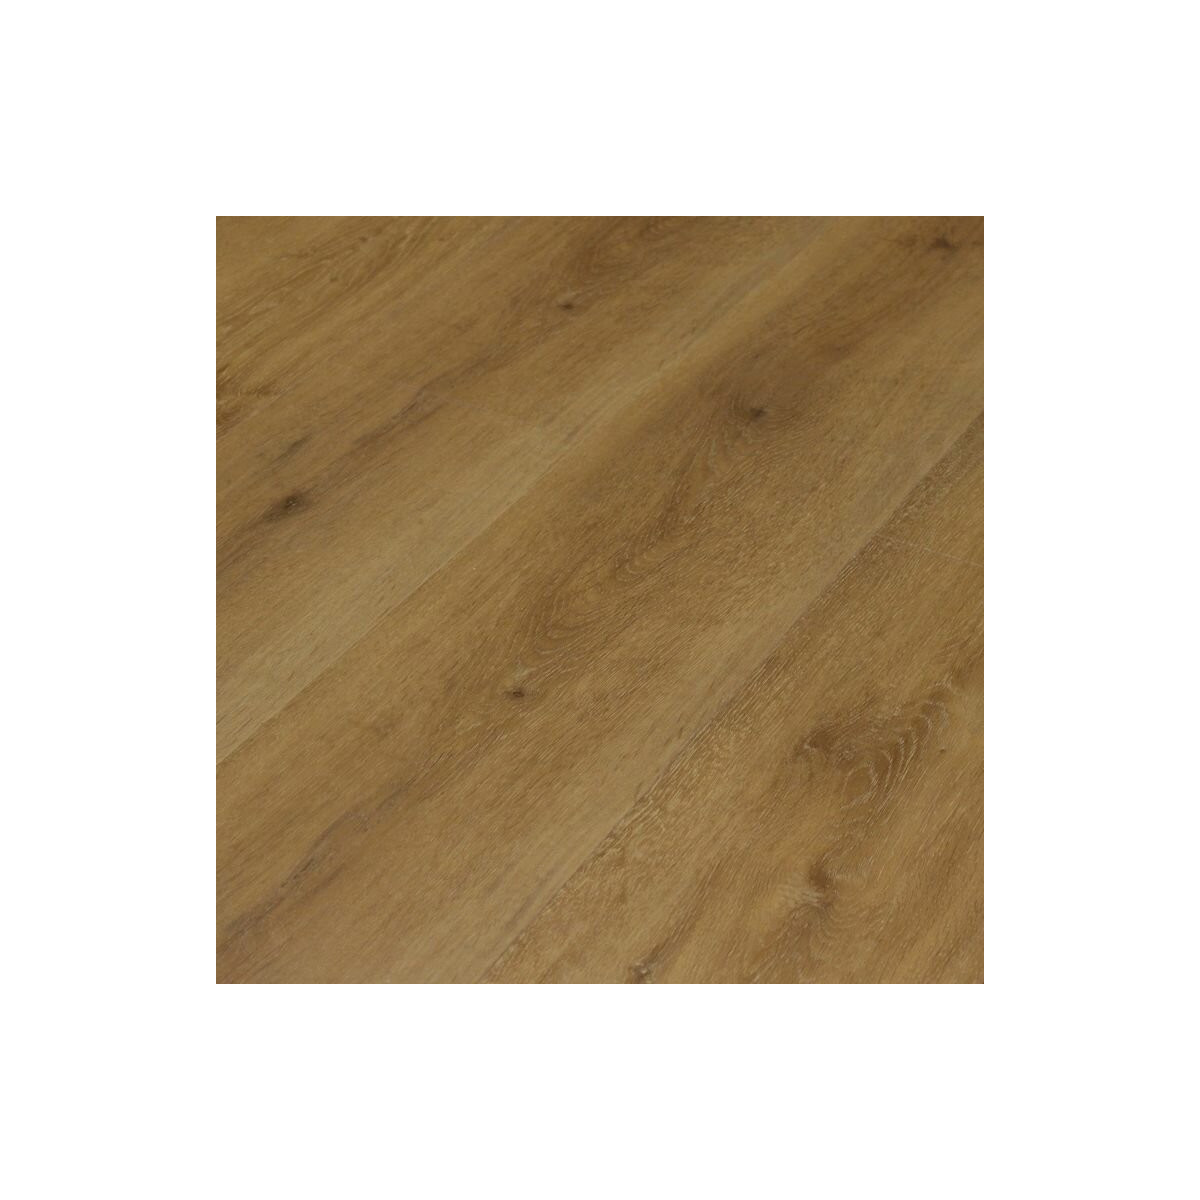 Vinylová podlaha kliková Click Elit Rigid Wide Wood 23322 Natural Oak Plain